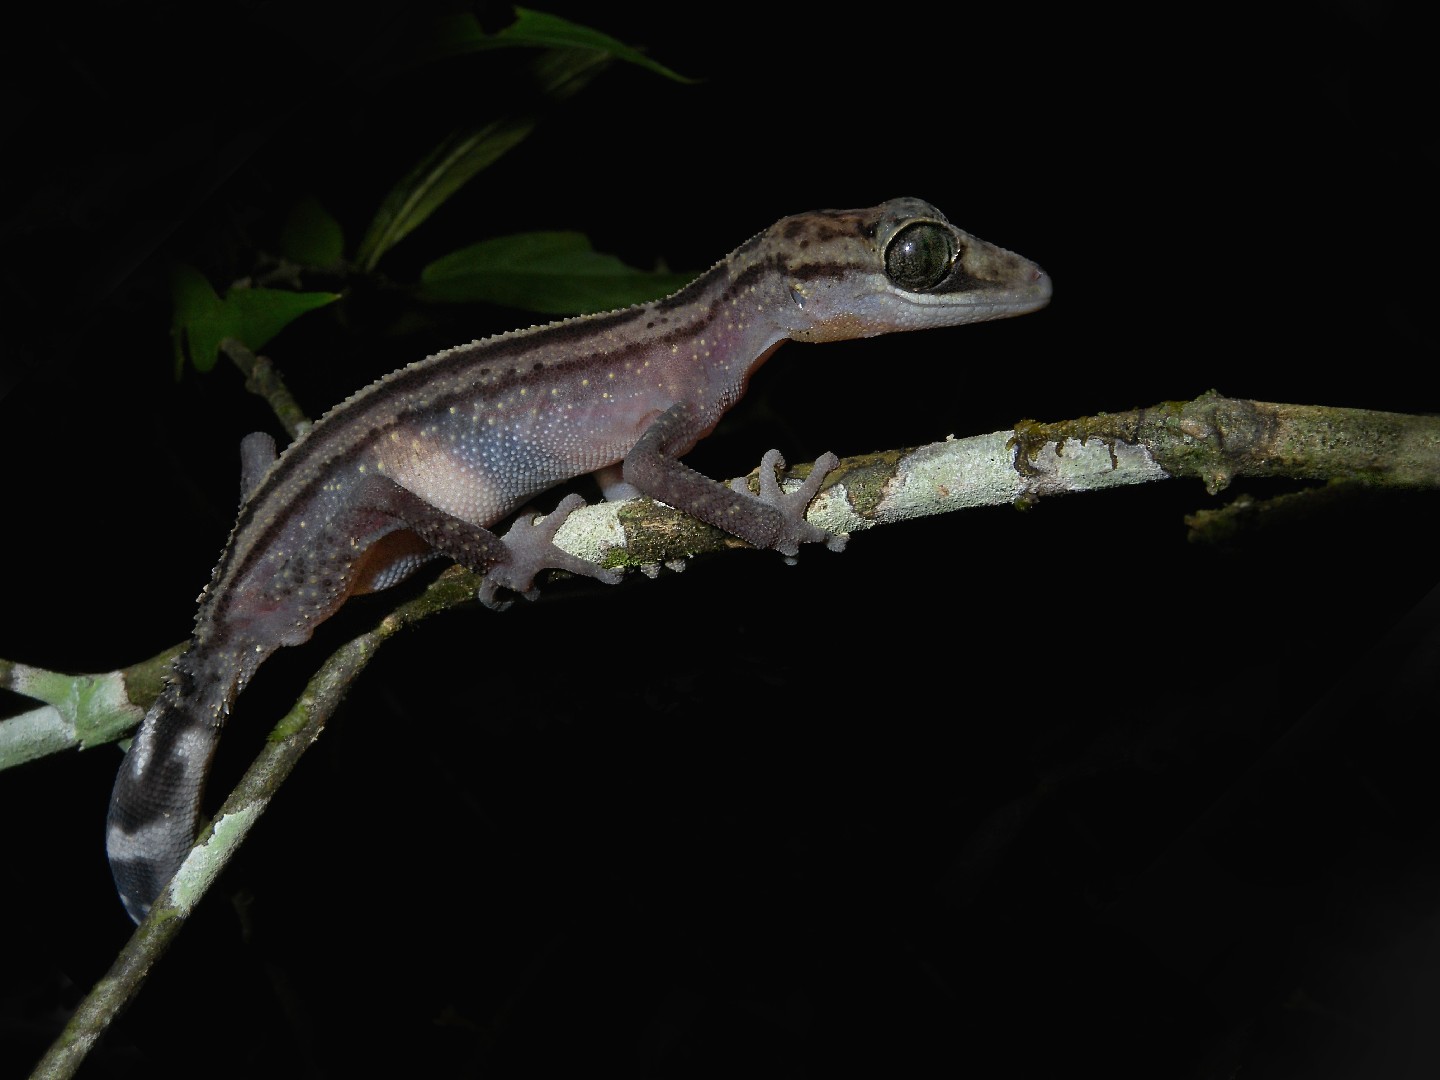 Madagascar ground gecko (Paroedura)